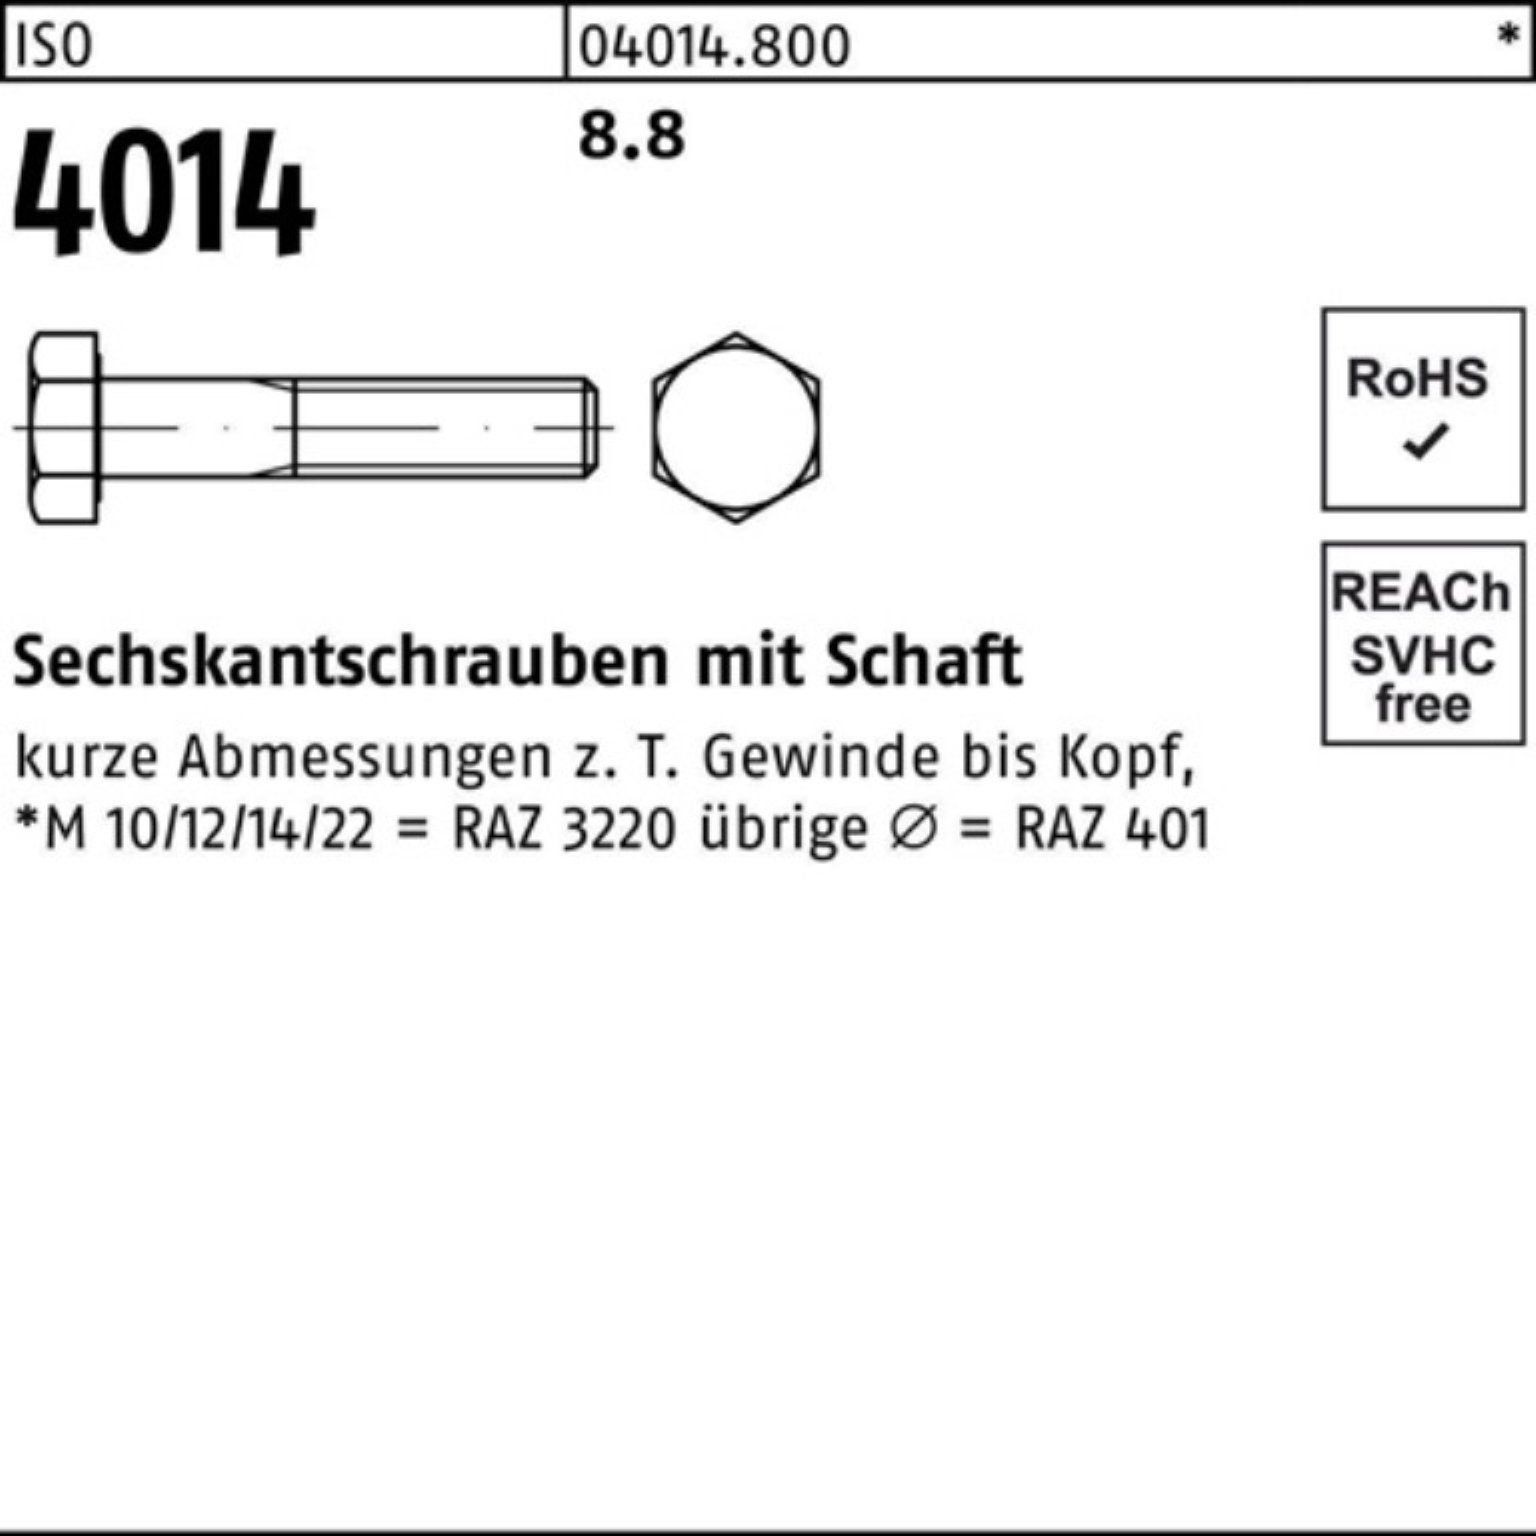 Stück ISO 460 IS 8.8 Pack Sechskantschraube 4014 100er Sechskantschraube Schaft M12x 25 Bufab